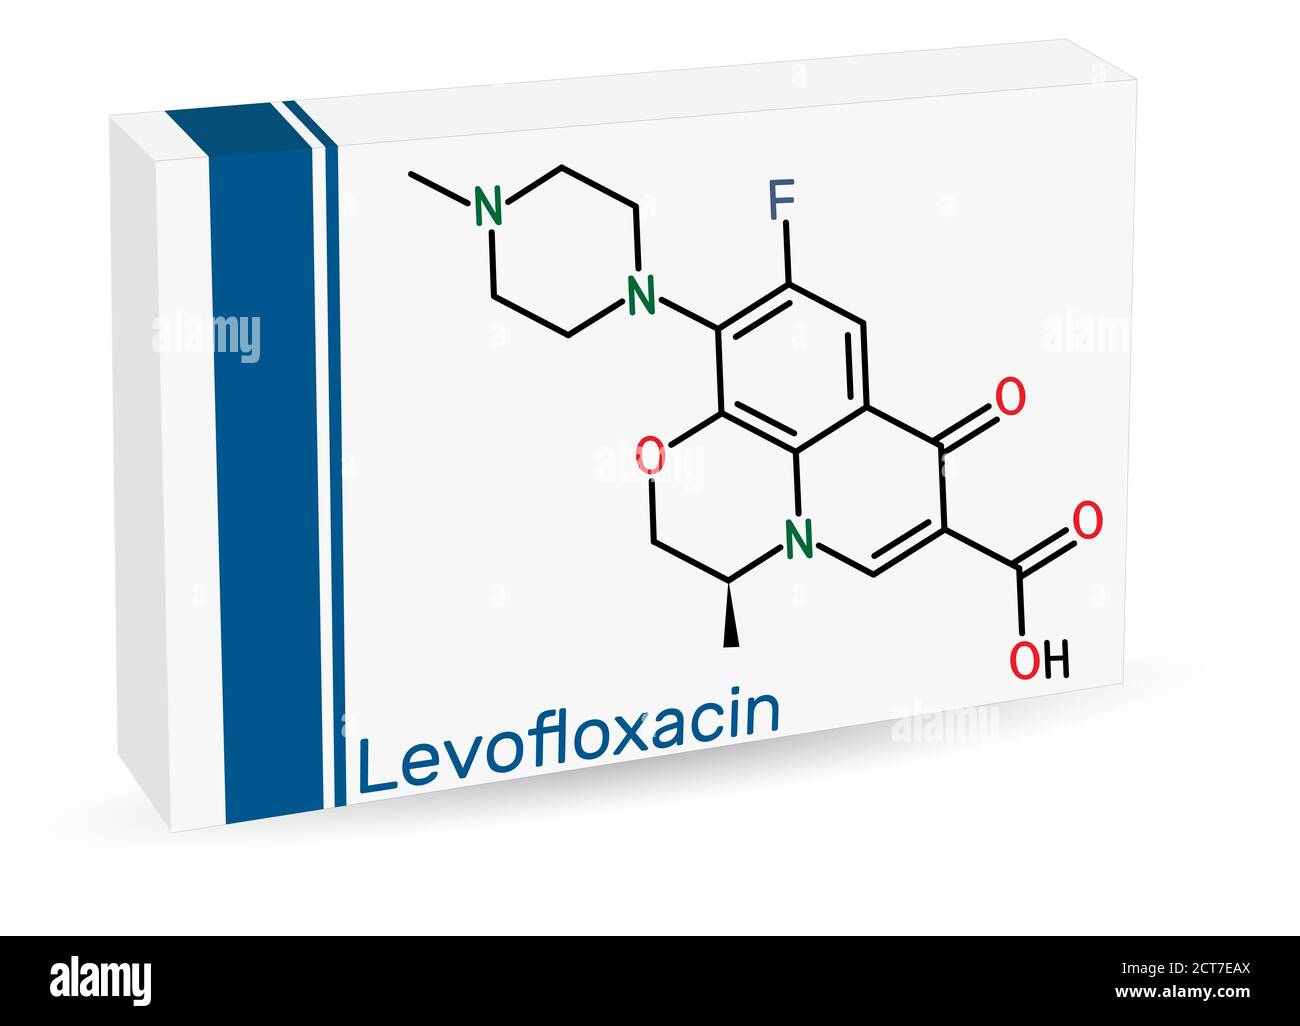 Levofloxacin, Fluorchinolon Antibiotikum Molekül. Es wird verwendet, um bakterielle Sinusitis, Lungenentzündung zu behandeln. Papierverpackungen für Medikamente. Vektorgrafik Stock Vektor